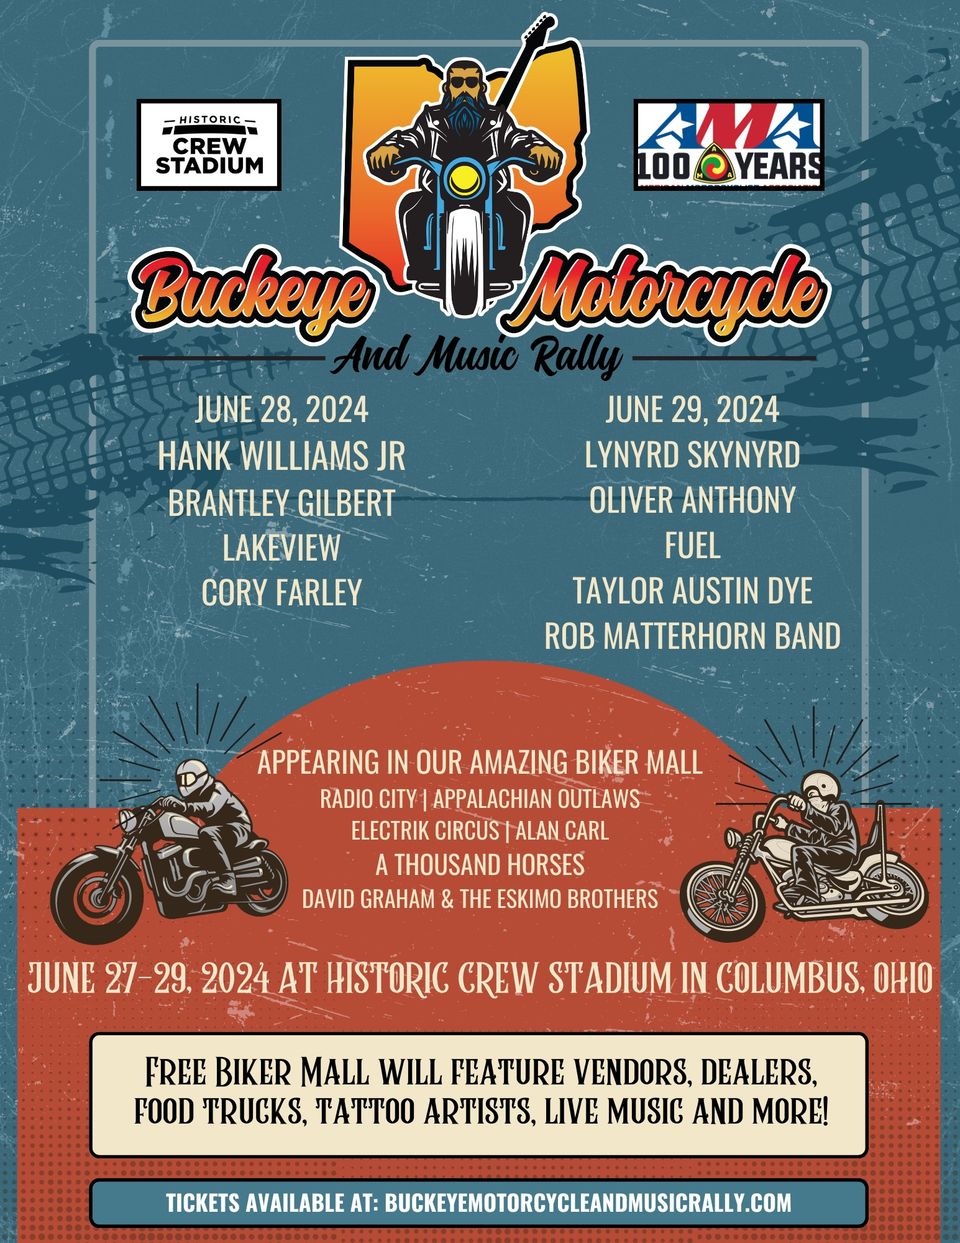 Buckeye motorcycle and music rally june 27 29 2024